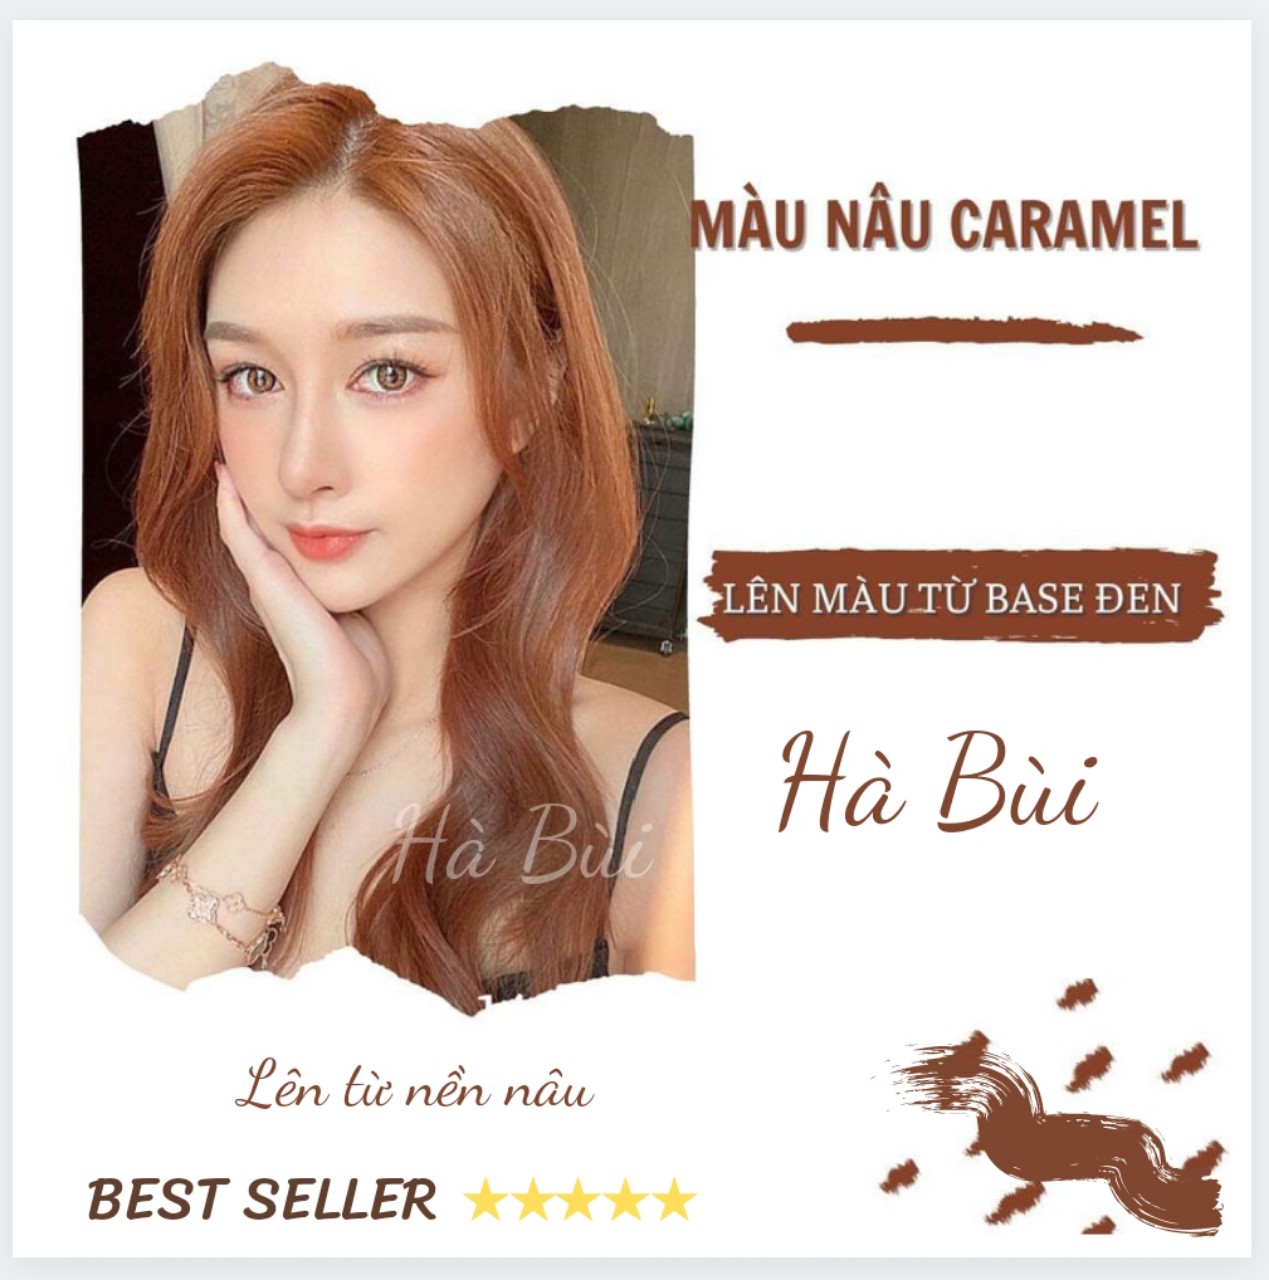 Cách nhuộm màu tóc nâu caramel tại nhà bài bản và dễ dàng nhất -  zemahair.com